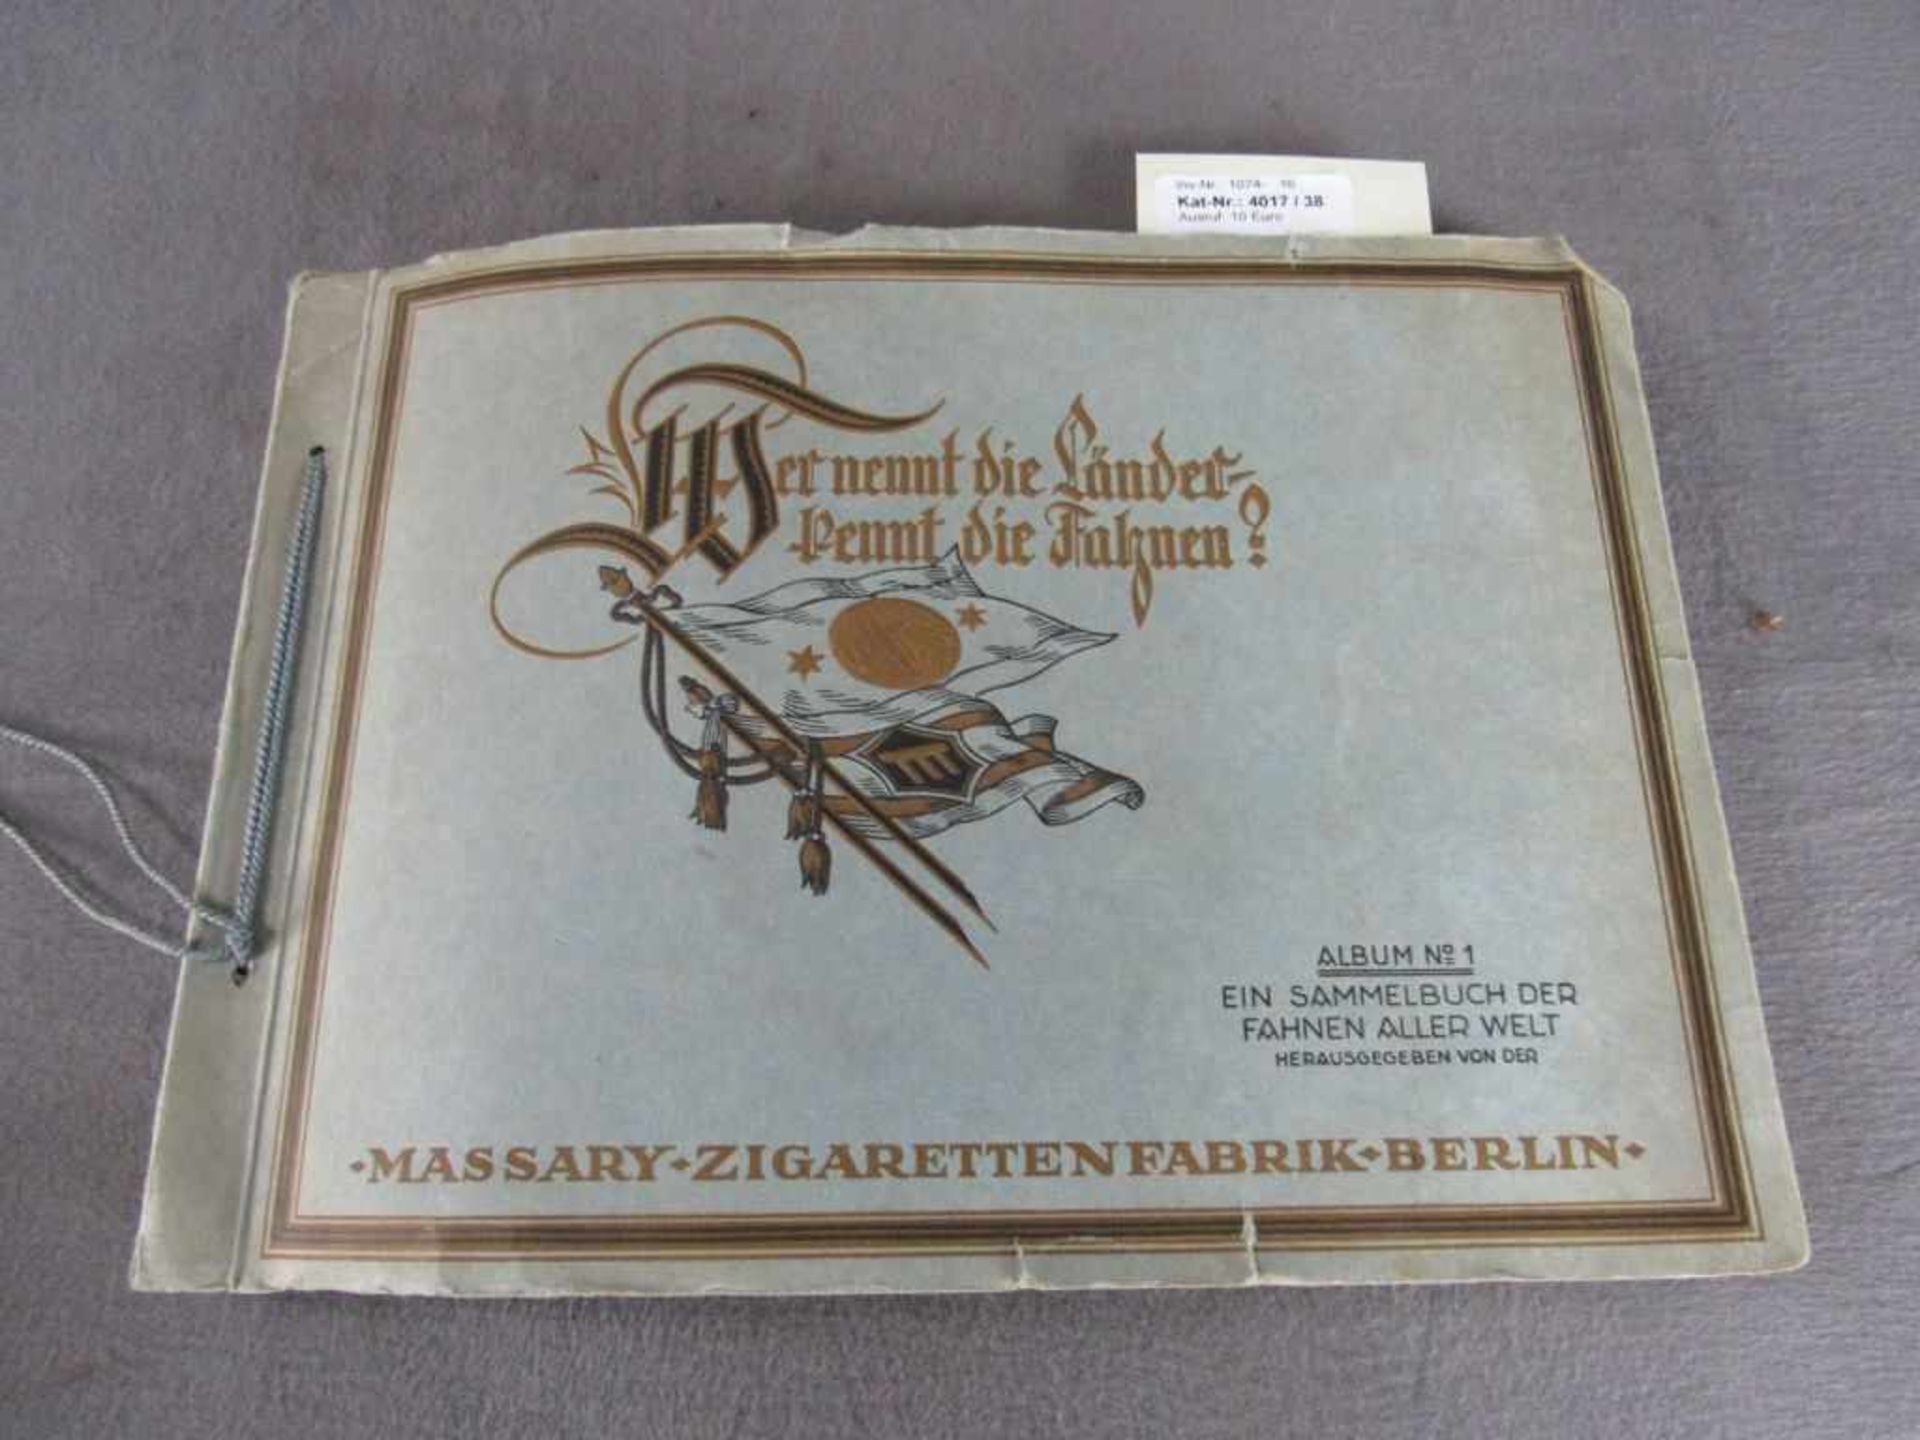 Ziggarrettenbilderalbum Fahnen und Flaggen Album Nr. 1 schöner Zustand